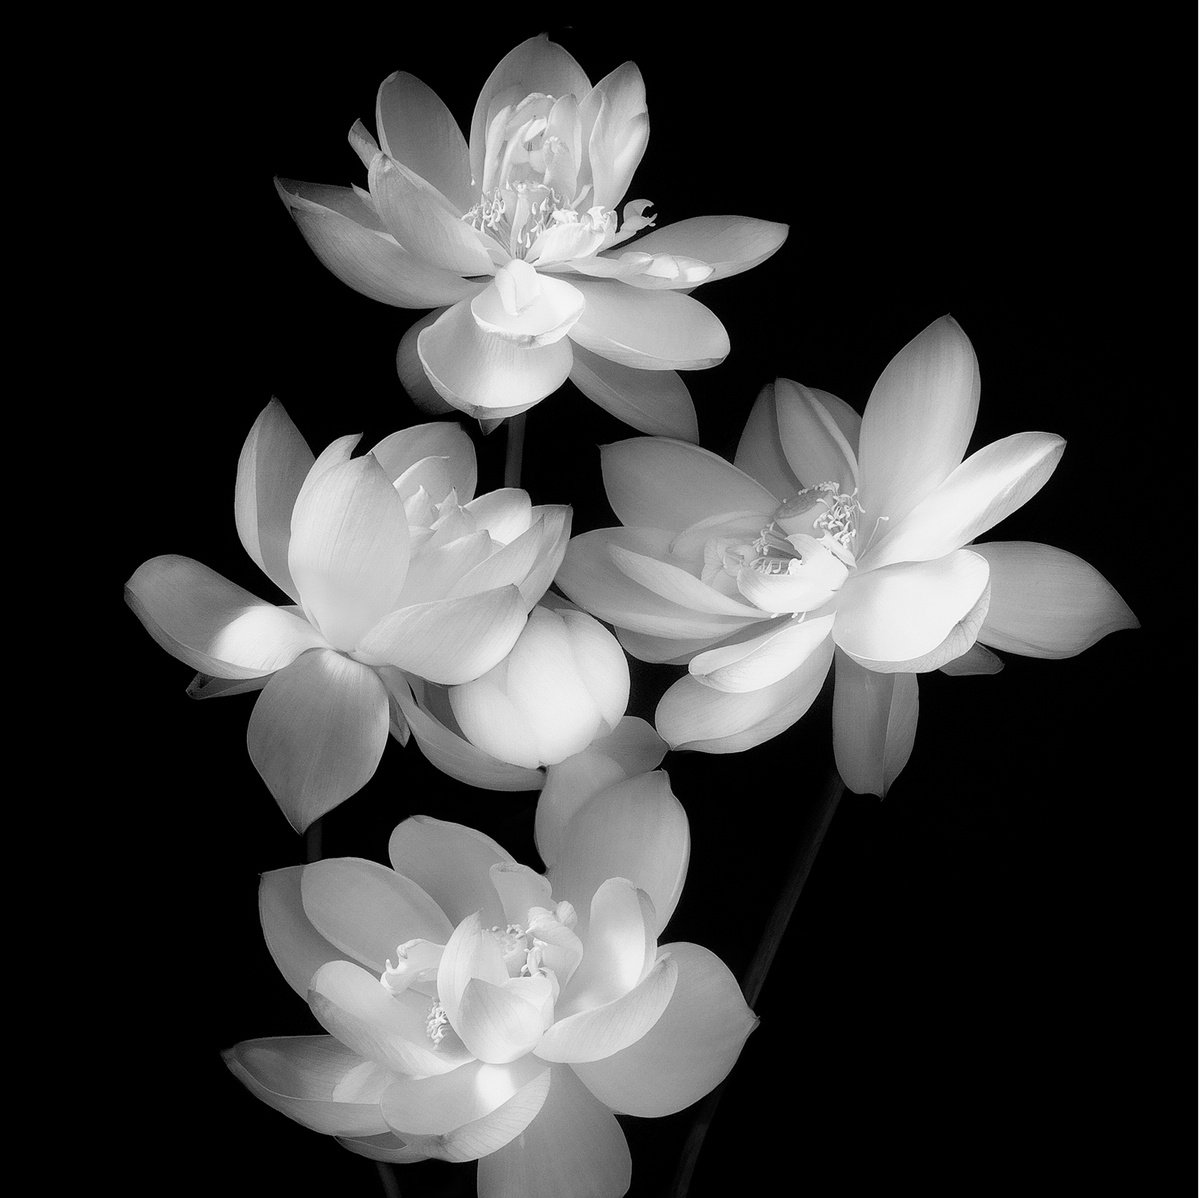 IN HARMONY -SPARKLE- #005 Black and white by Keiichiro Muramatsu